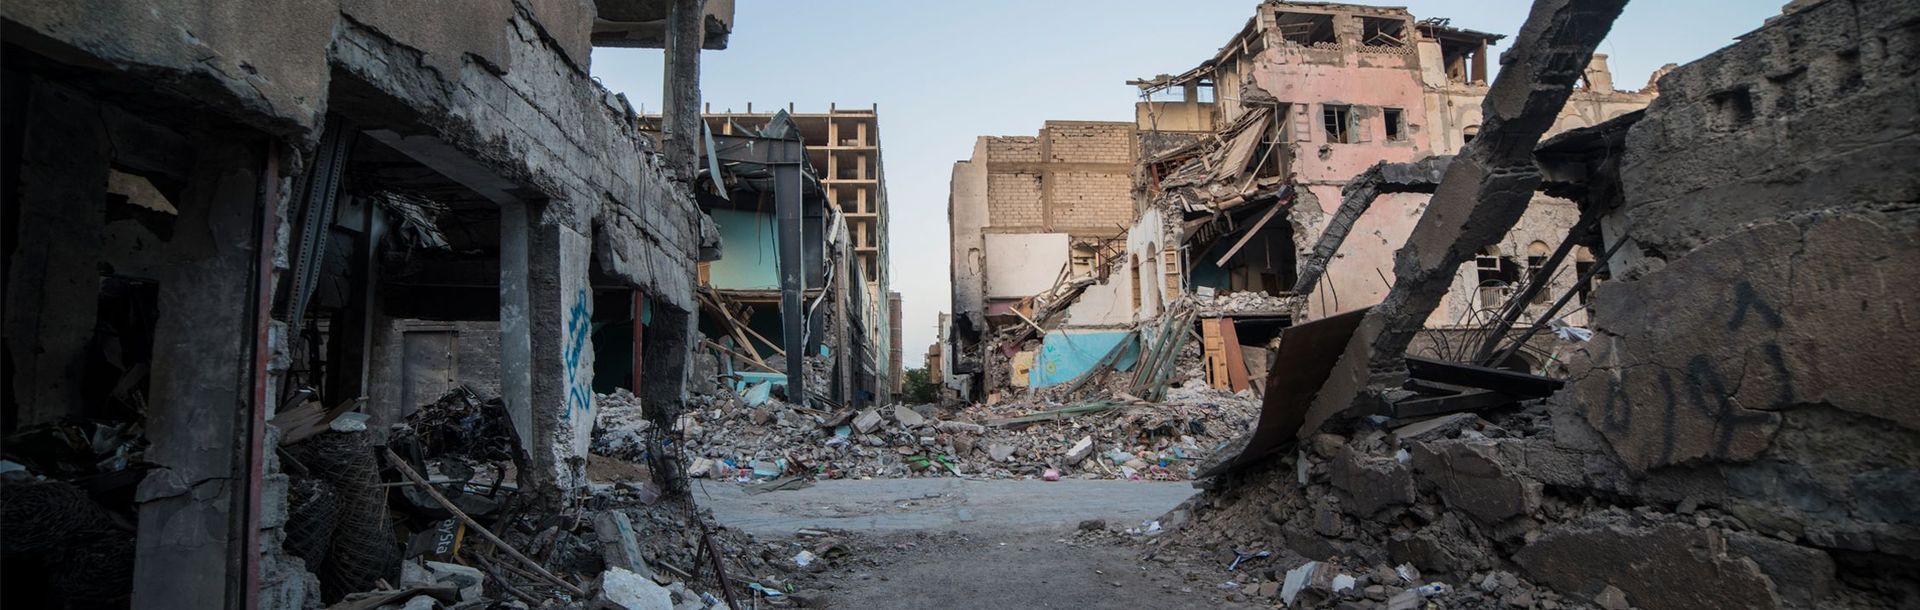 Zerstörte Stadt im Jemen